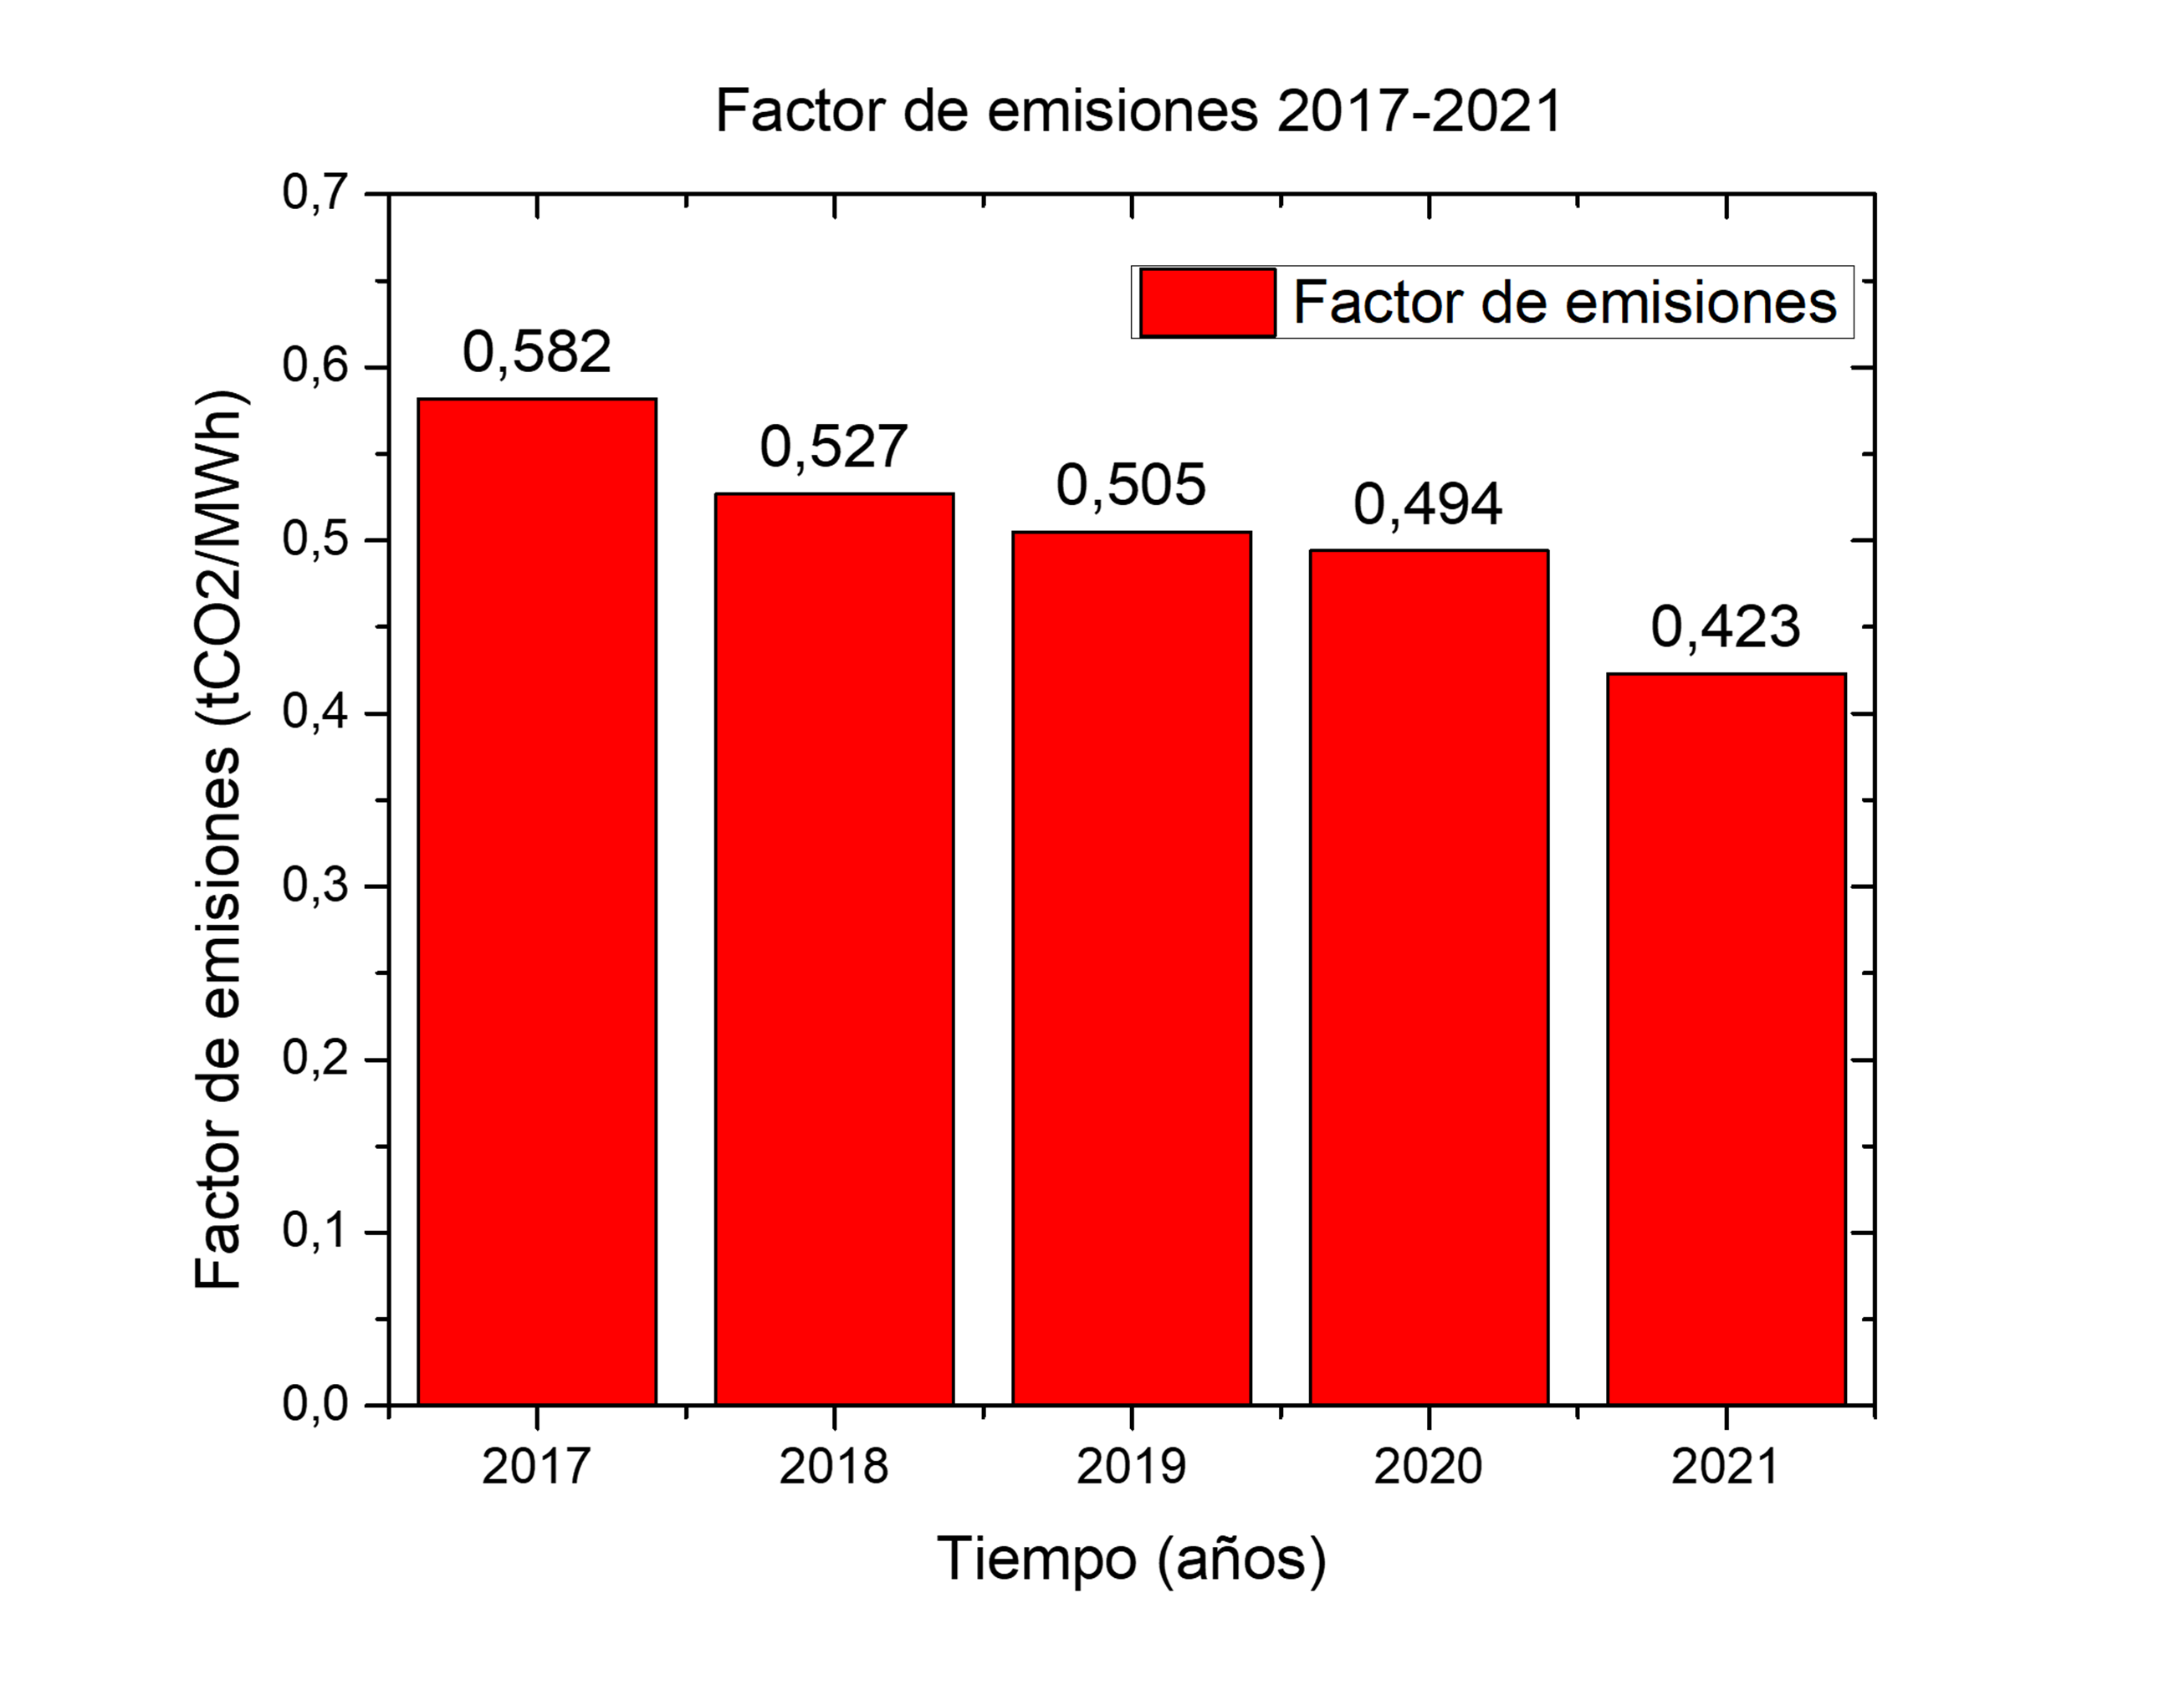 Figura 1. Factor de emisiones 2017-2021